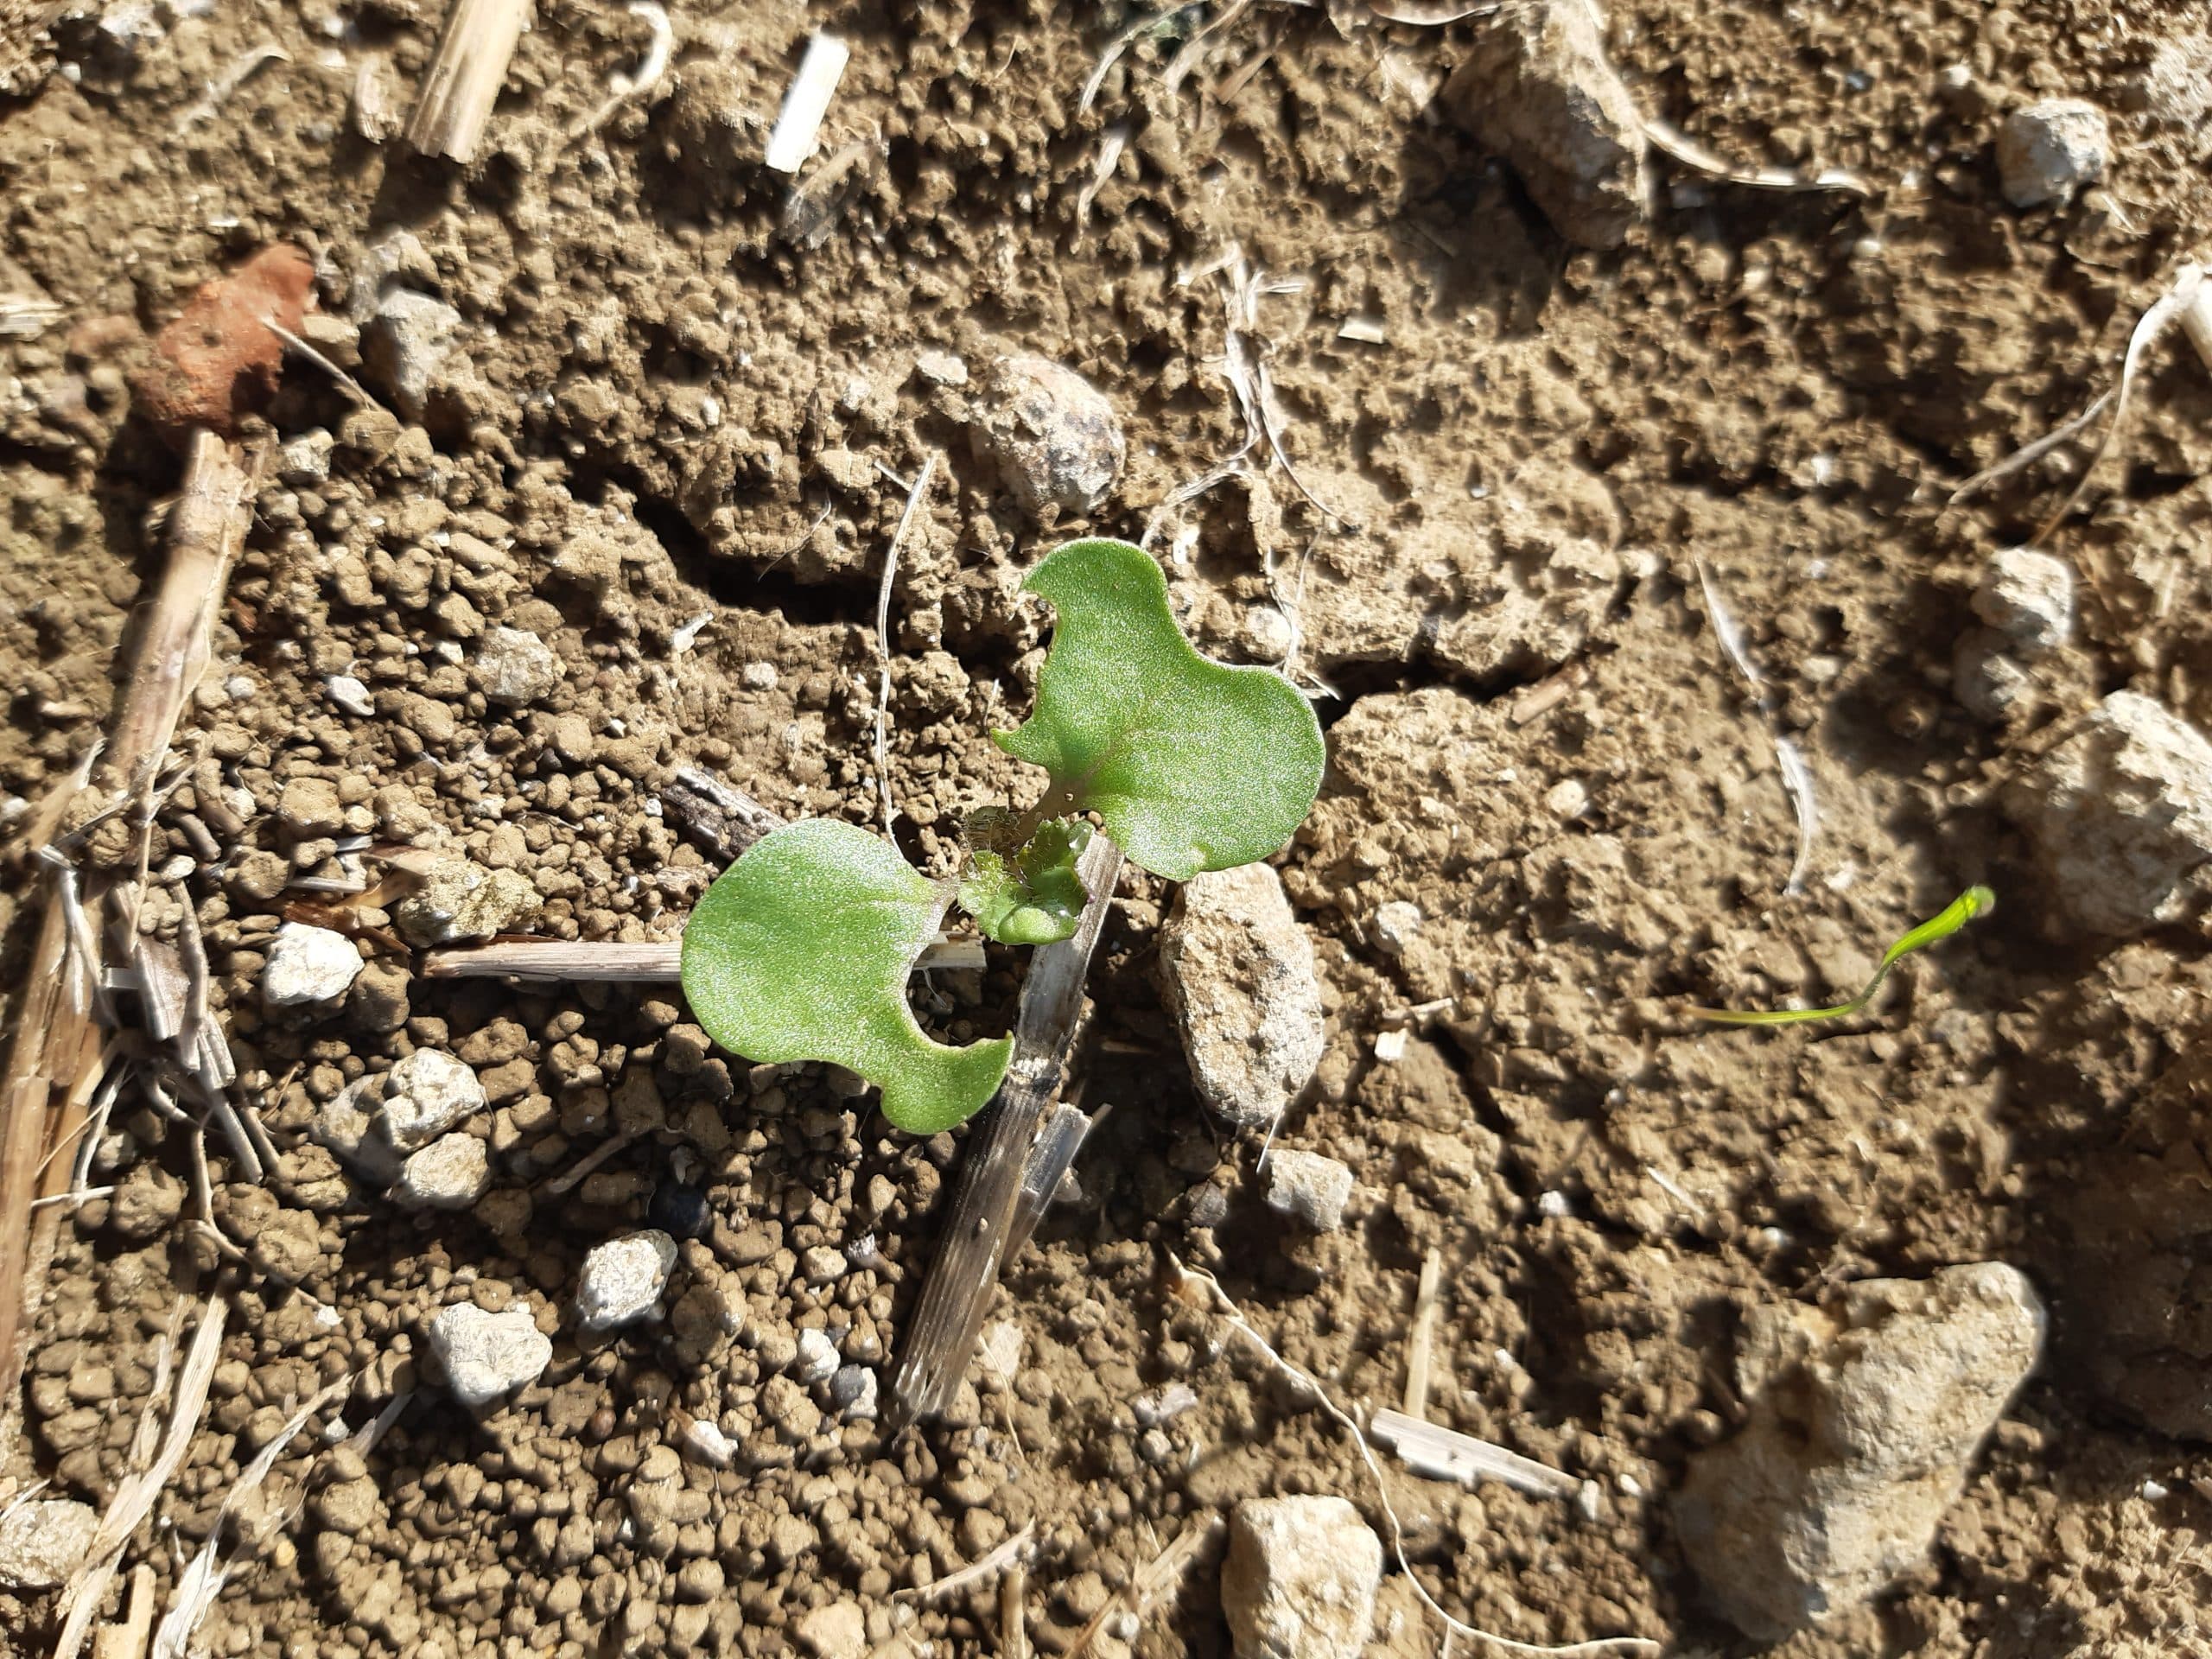 En colza, le seuil d’intervention avec un granulé anti-limaces est de 5 limaces/m² avant semis et de 1 limace/m² à partir du semis.